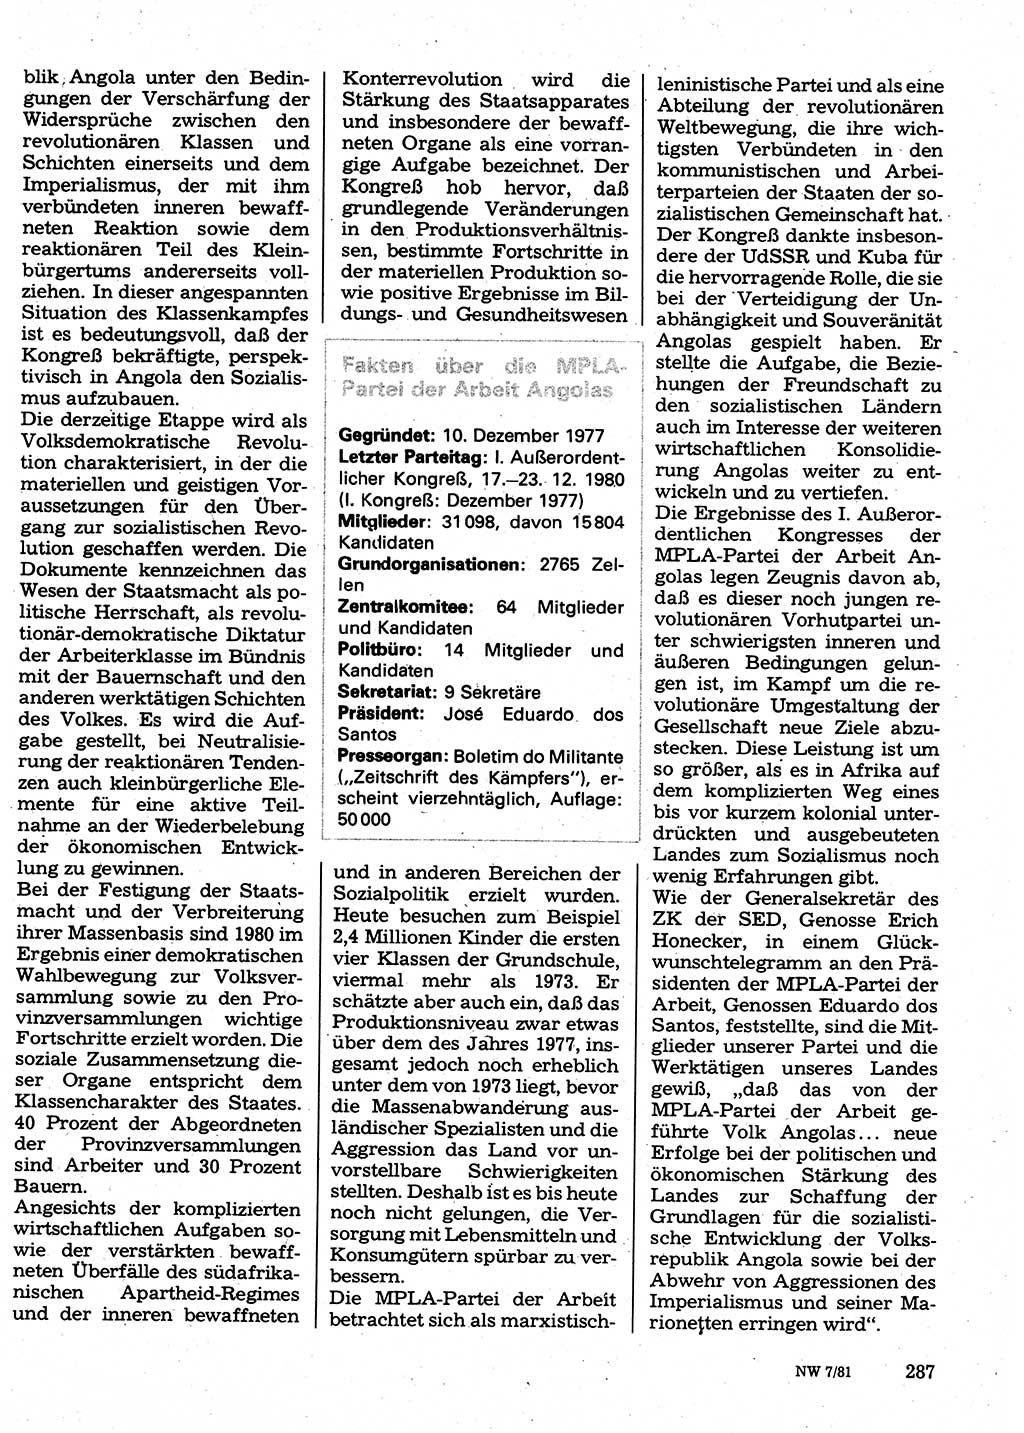 Neuer Weg (NW), Organ des Zentralkomitees (ZK) der SED (Sozialistische Einheitspartei Deutschlands) für Fragen des Parteilebens, 36. Jahrgang [Deutsche Demokratische Republik (DDR)] 1981, Seite 287 (NW ZK SED DDR 1981, S. 287)